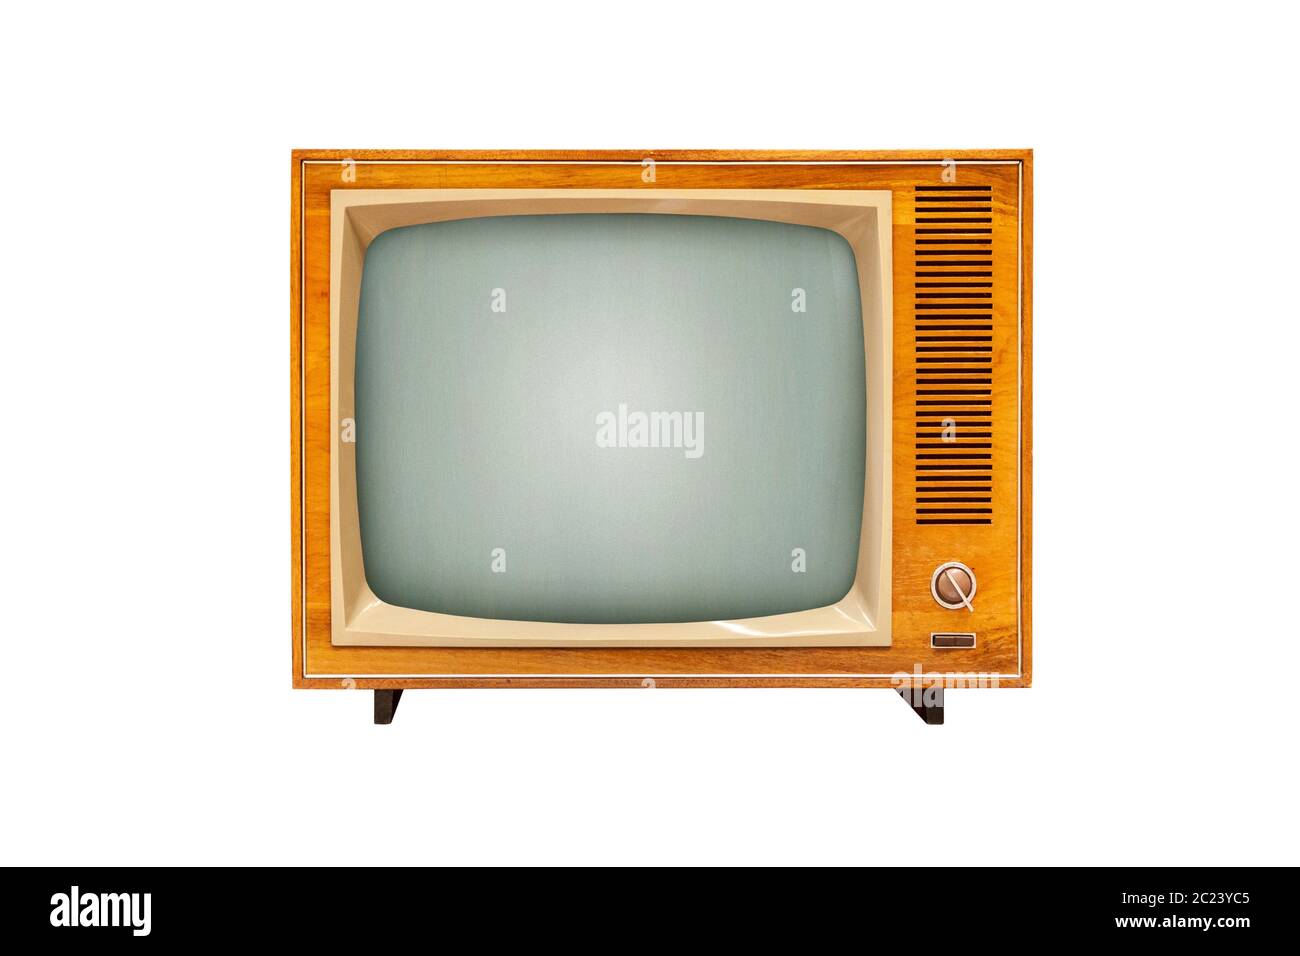 Vintage TV set isolato su sfondo bianco, alanog tecnologia televisiva Foto Stock